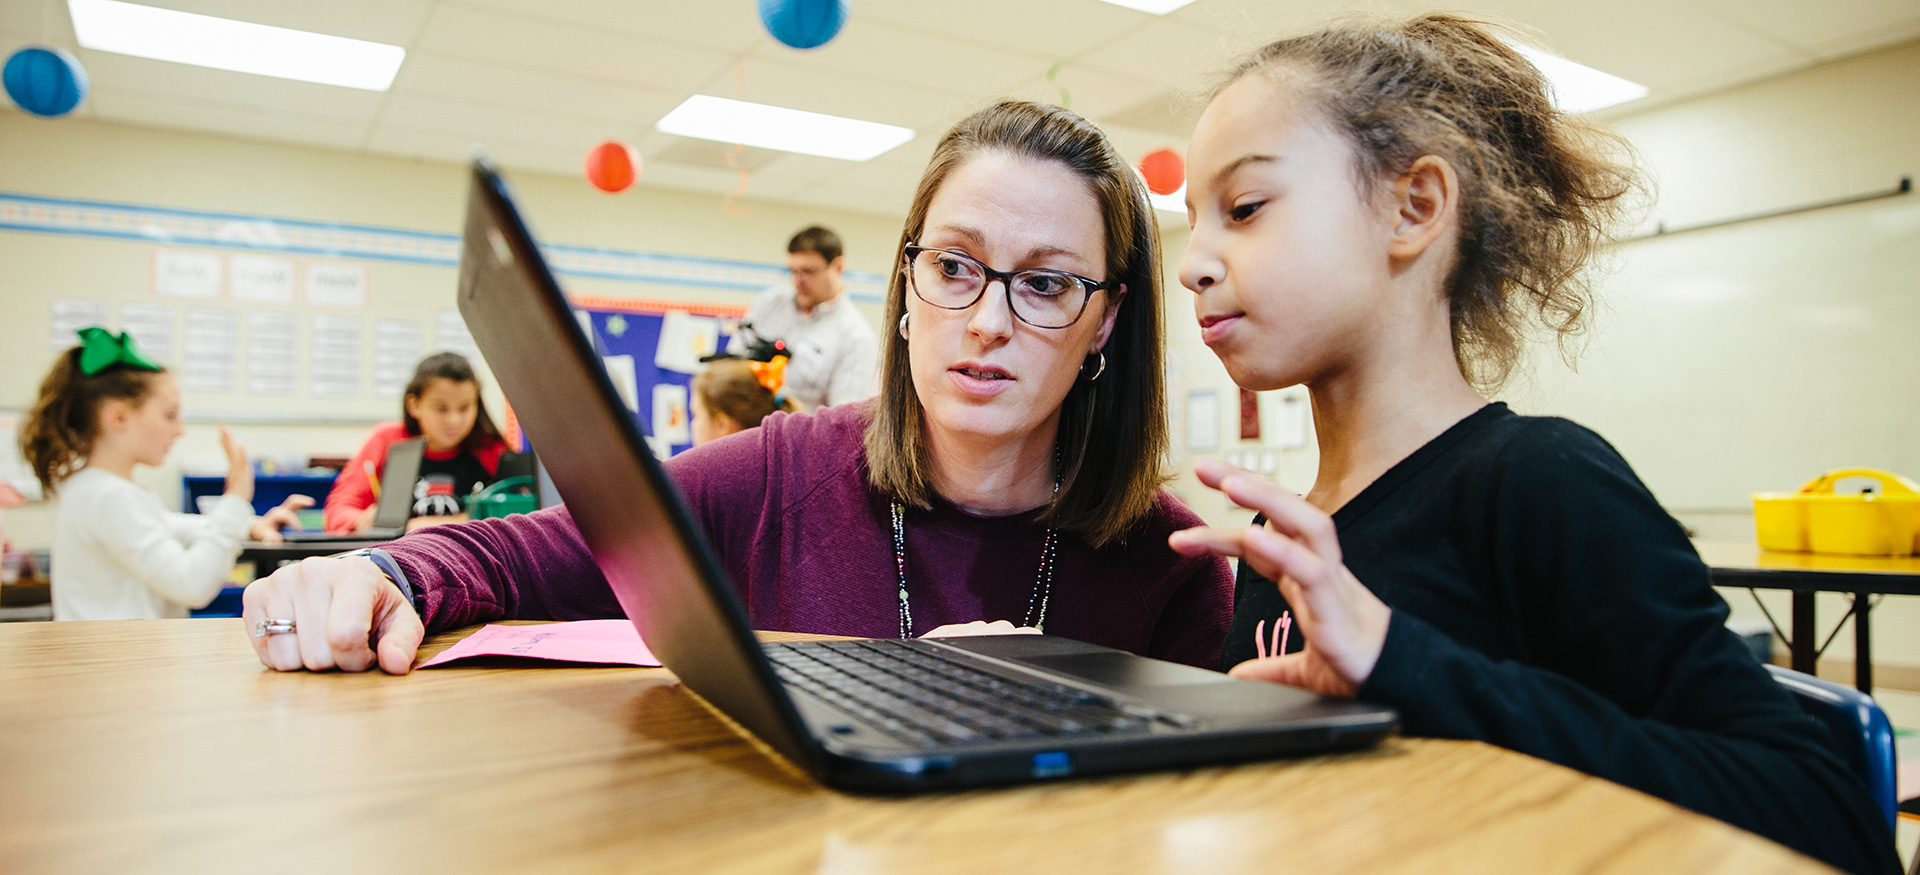 一位老师正在帮助一位在笔记本电脑上学习的学生。